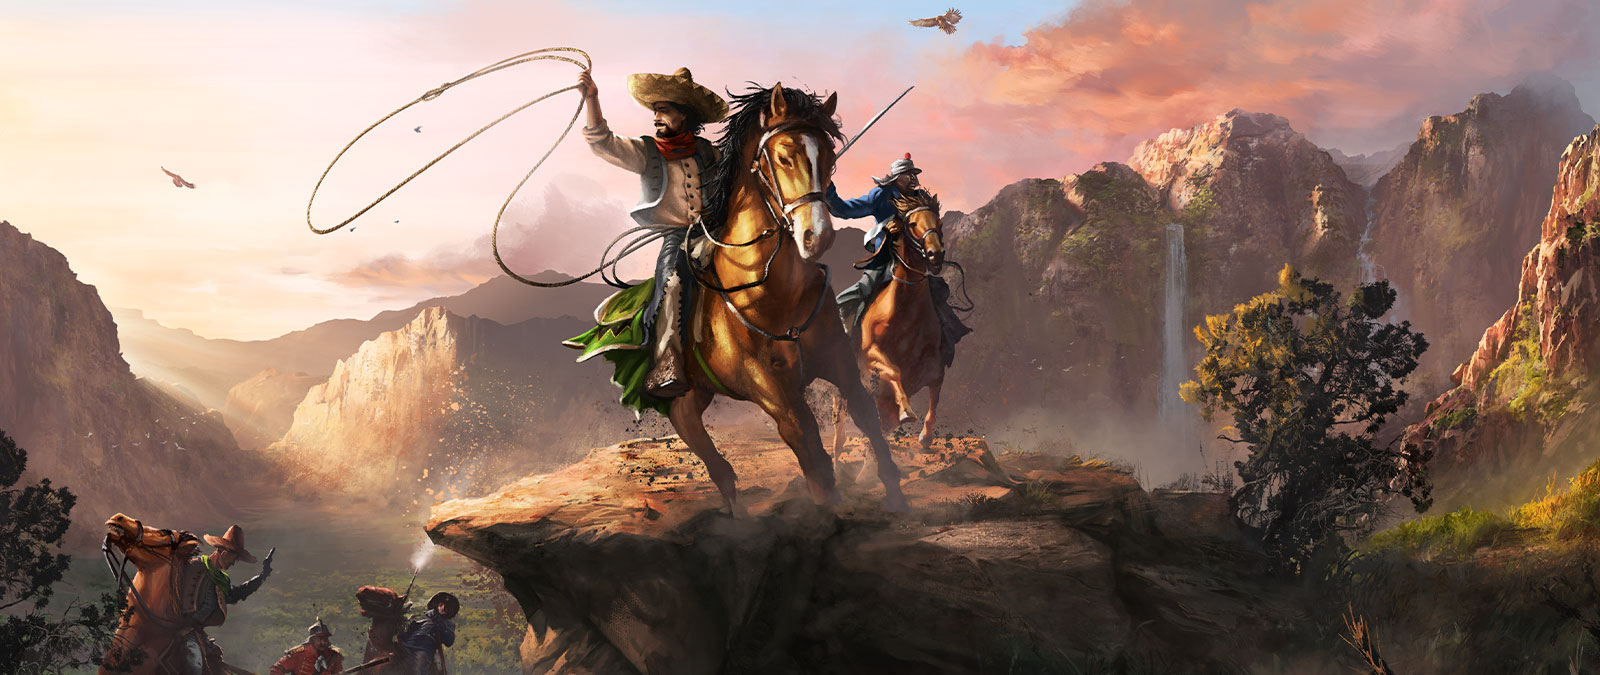 Два персонажа с лассо и мечом в руках верхом на лошадях в бескрайней долине.